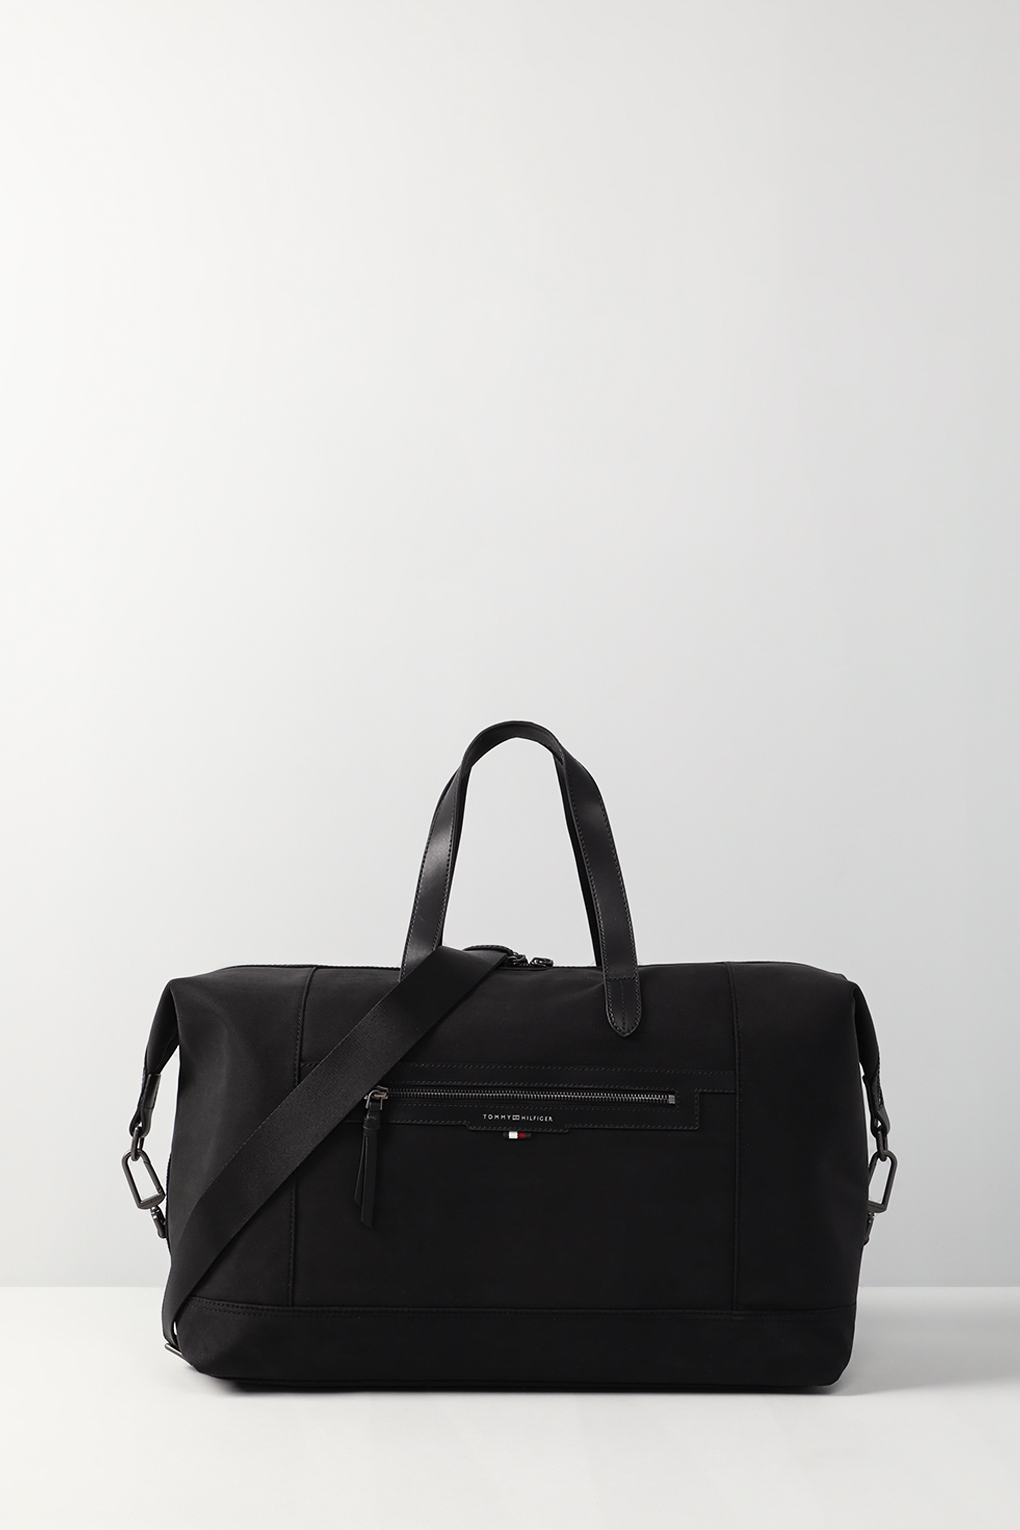 Дорожная сумка мужская Tommy Hilfiger AM0AM11527 черная, 37x47x24 см